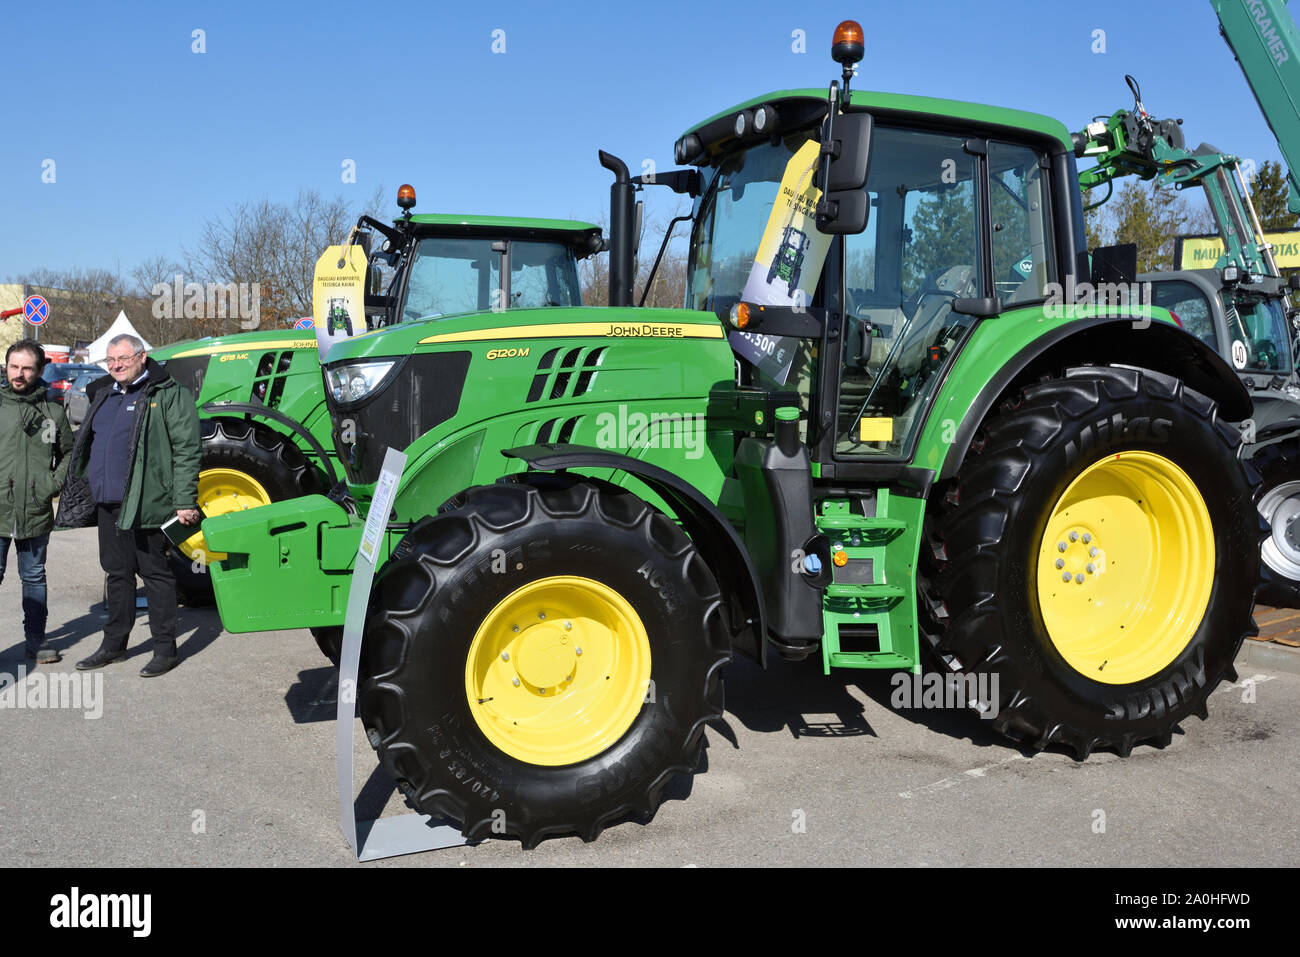 Kaunas, Lituanie - 04 avril : tracteurs John Deere et le logo à Kaunas sur Avril 04, 2019. John Deere est la société américaine qui fabrique l'agric Banque D'Images